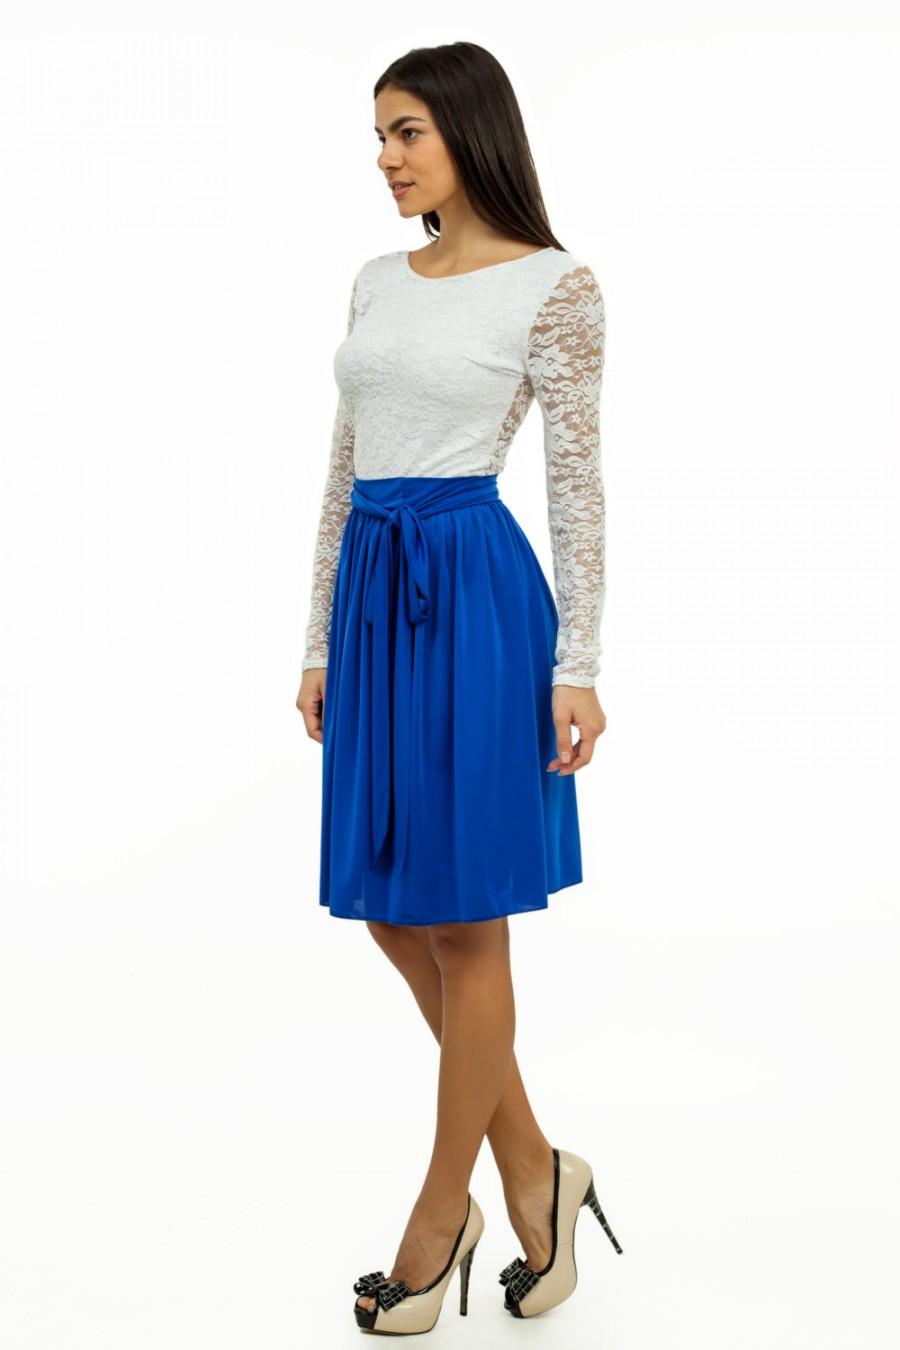 زفاف - Cocktail Dress Cobalt Blue With White Wedding Lace Dress Bridesmaid Knee Length Dress.